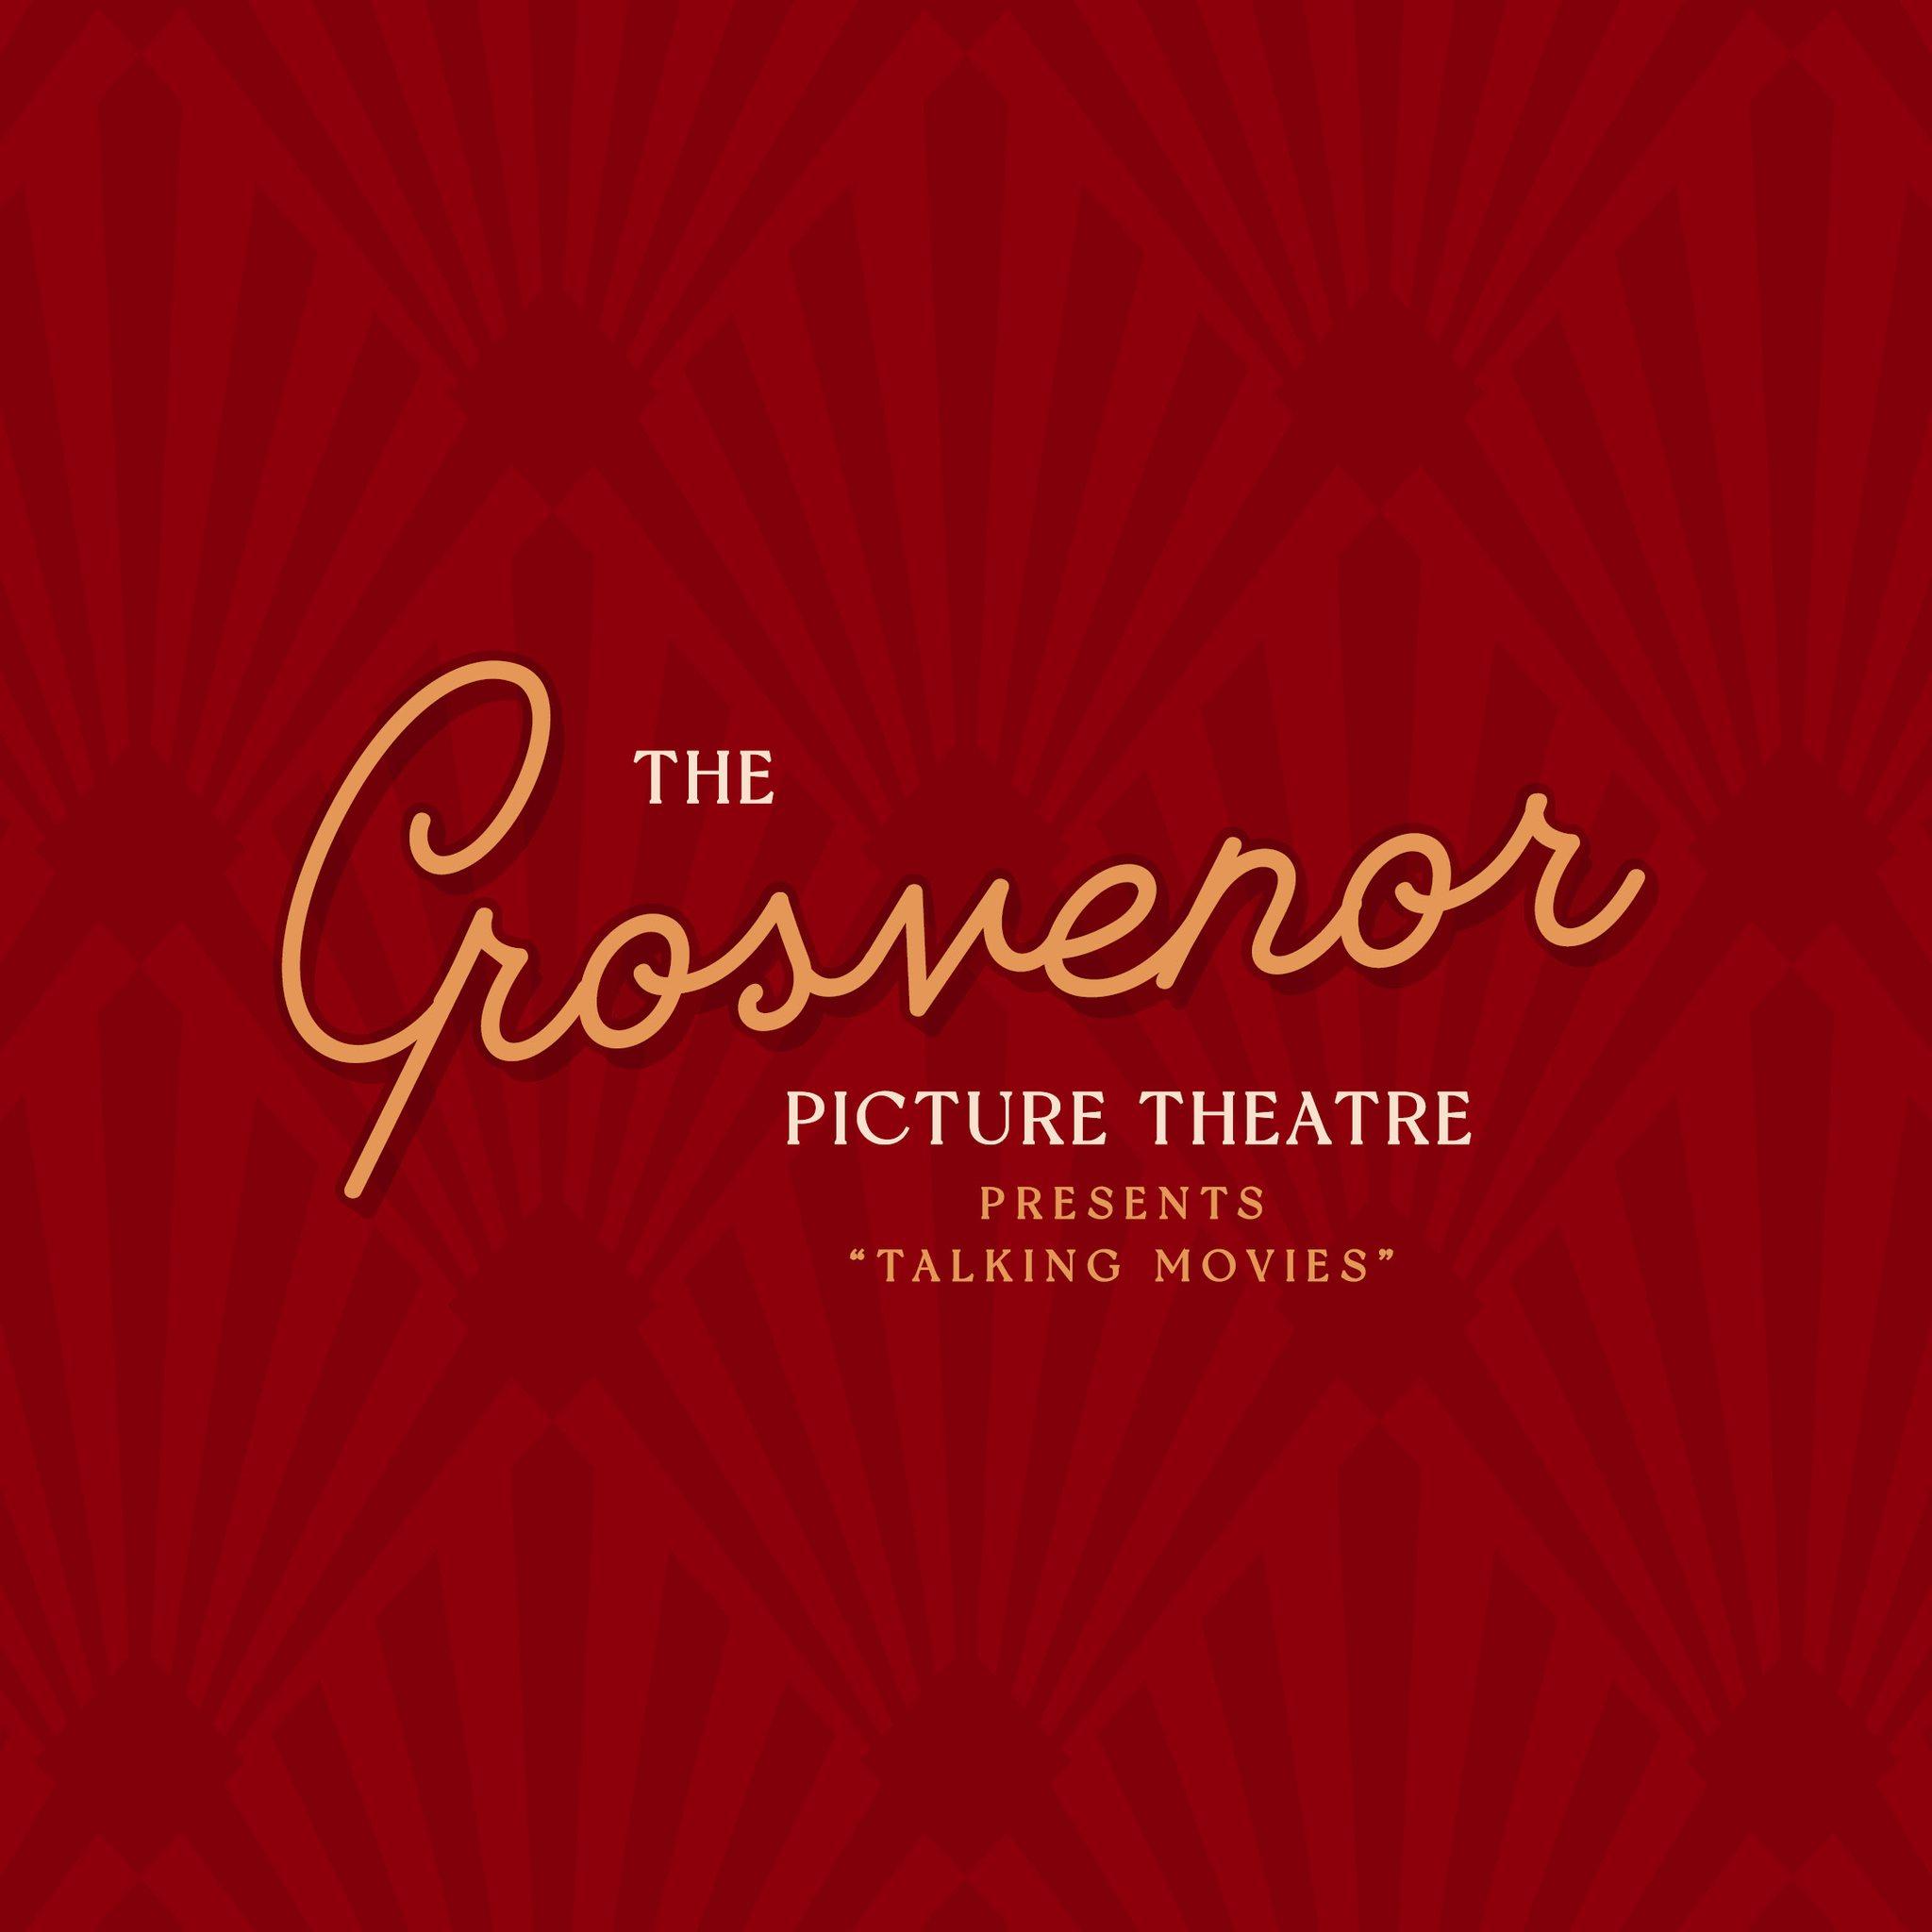 Grosvenor Picture Theatre